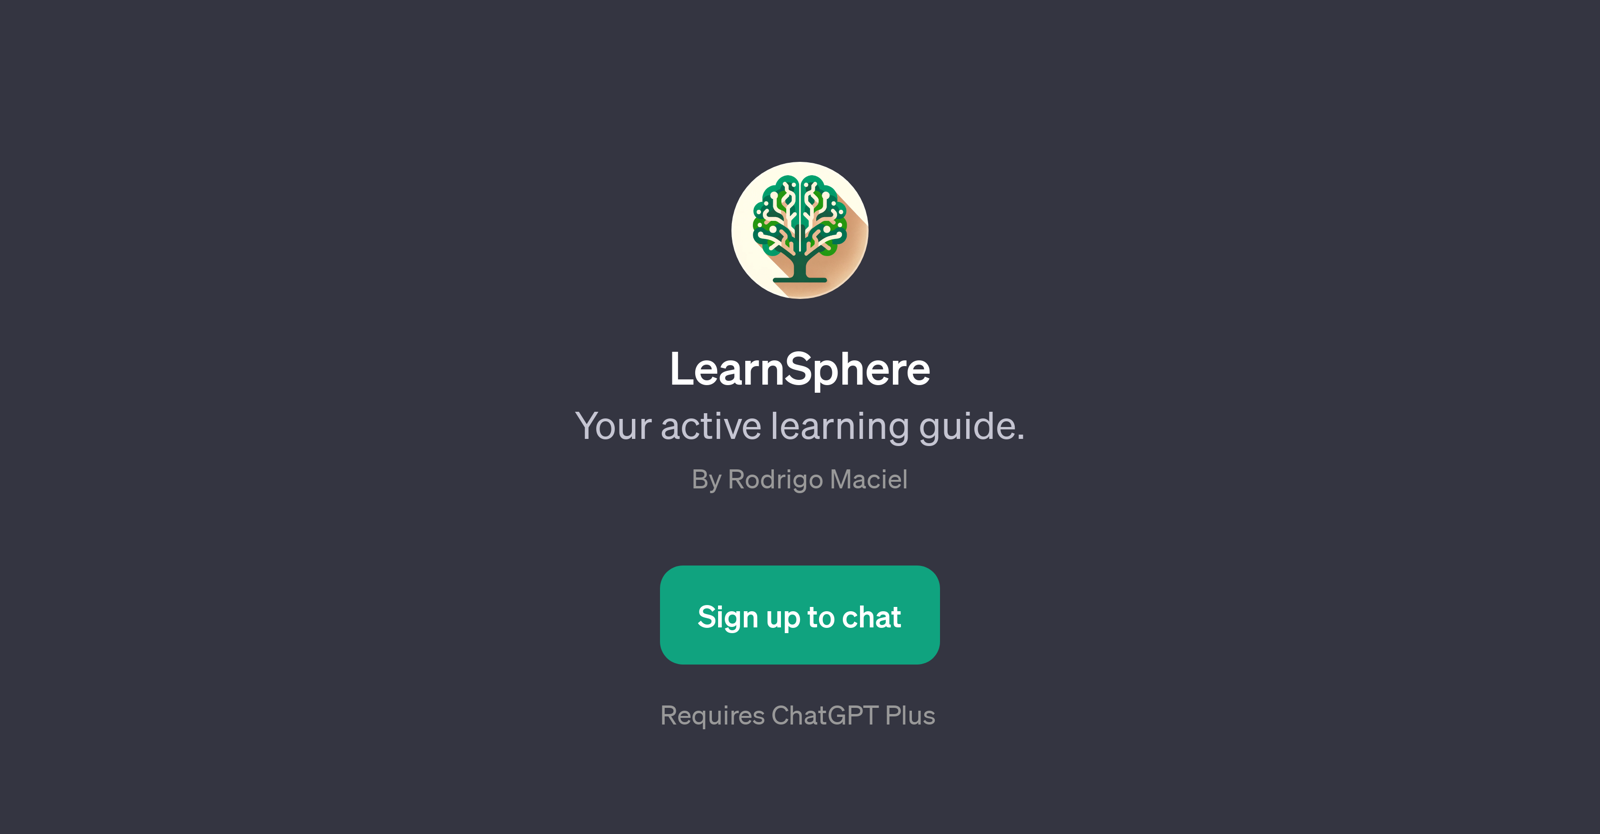 LearnSphere website